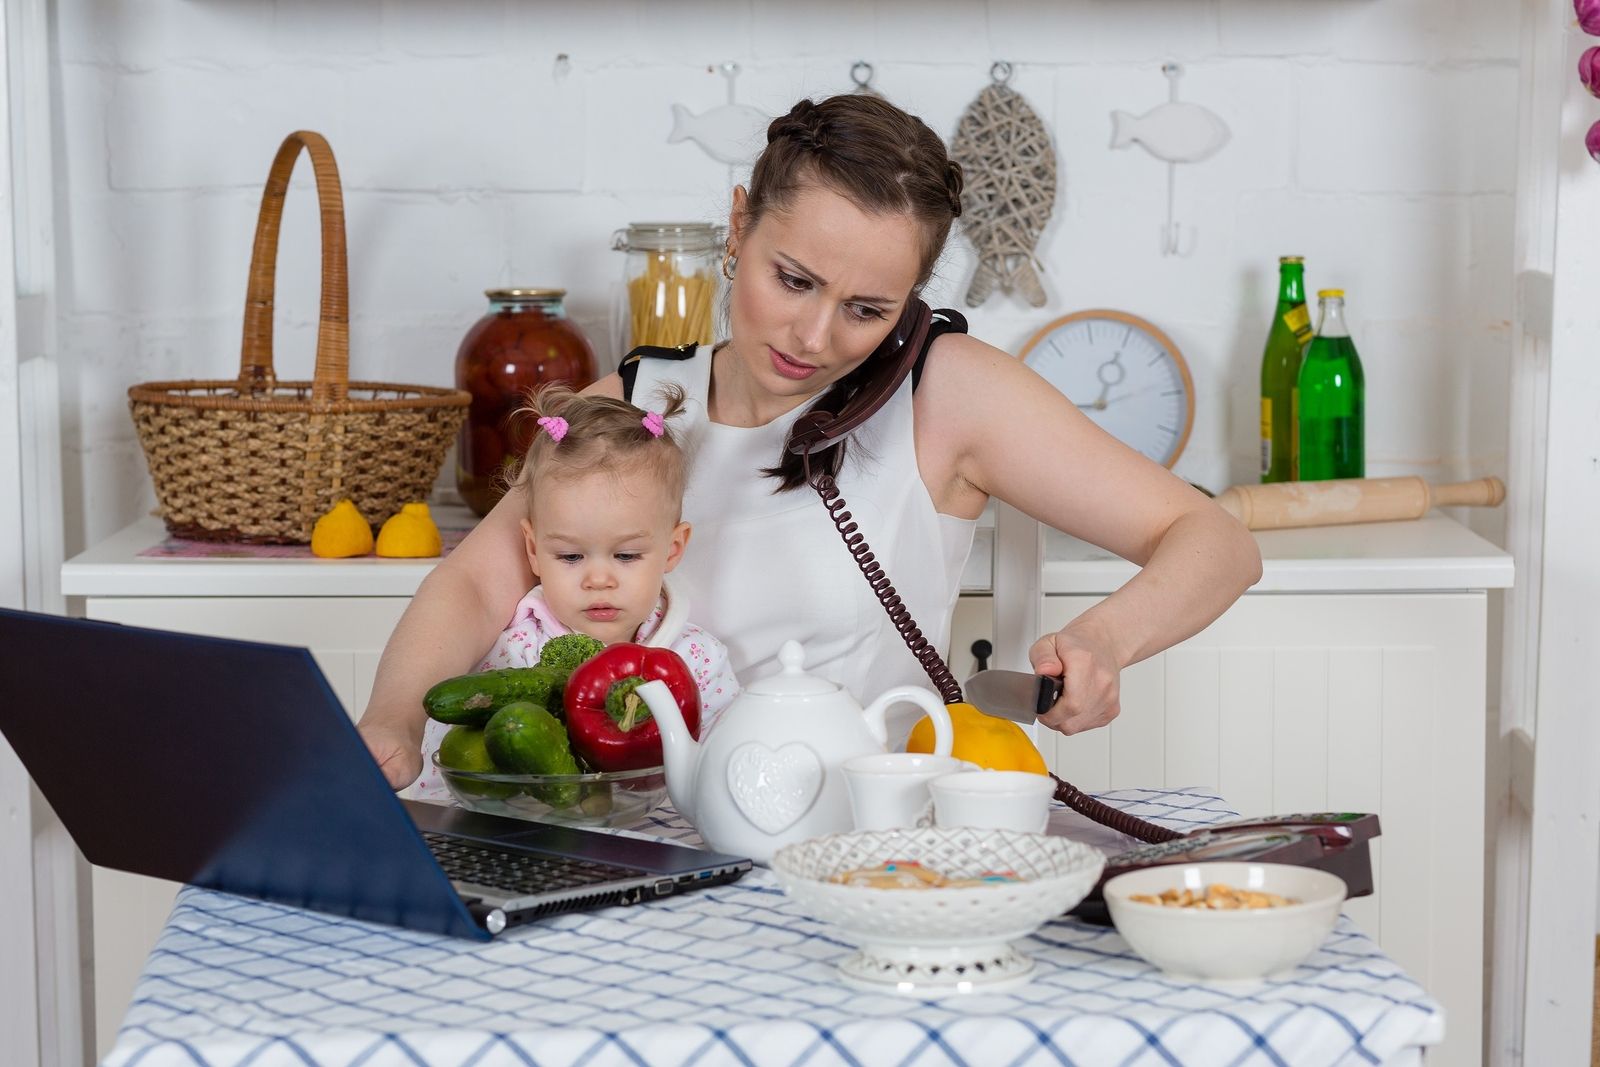 Mulheres dedicam a afazeres domésticos o dobro de horas dos homens